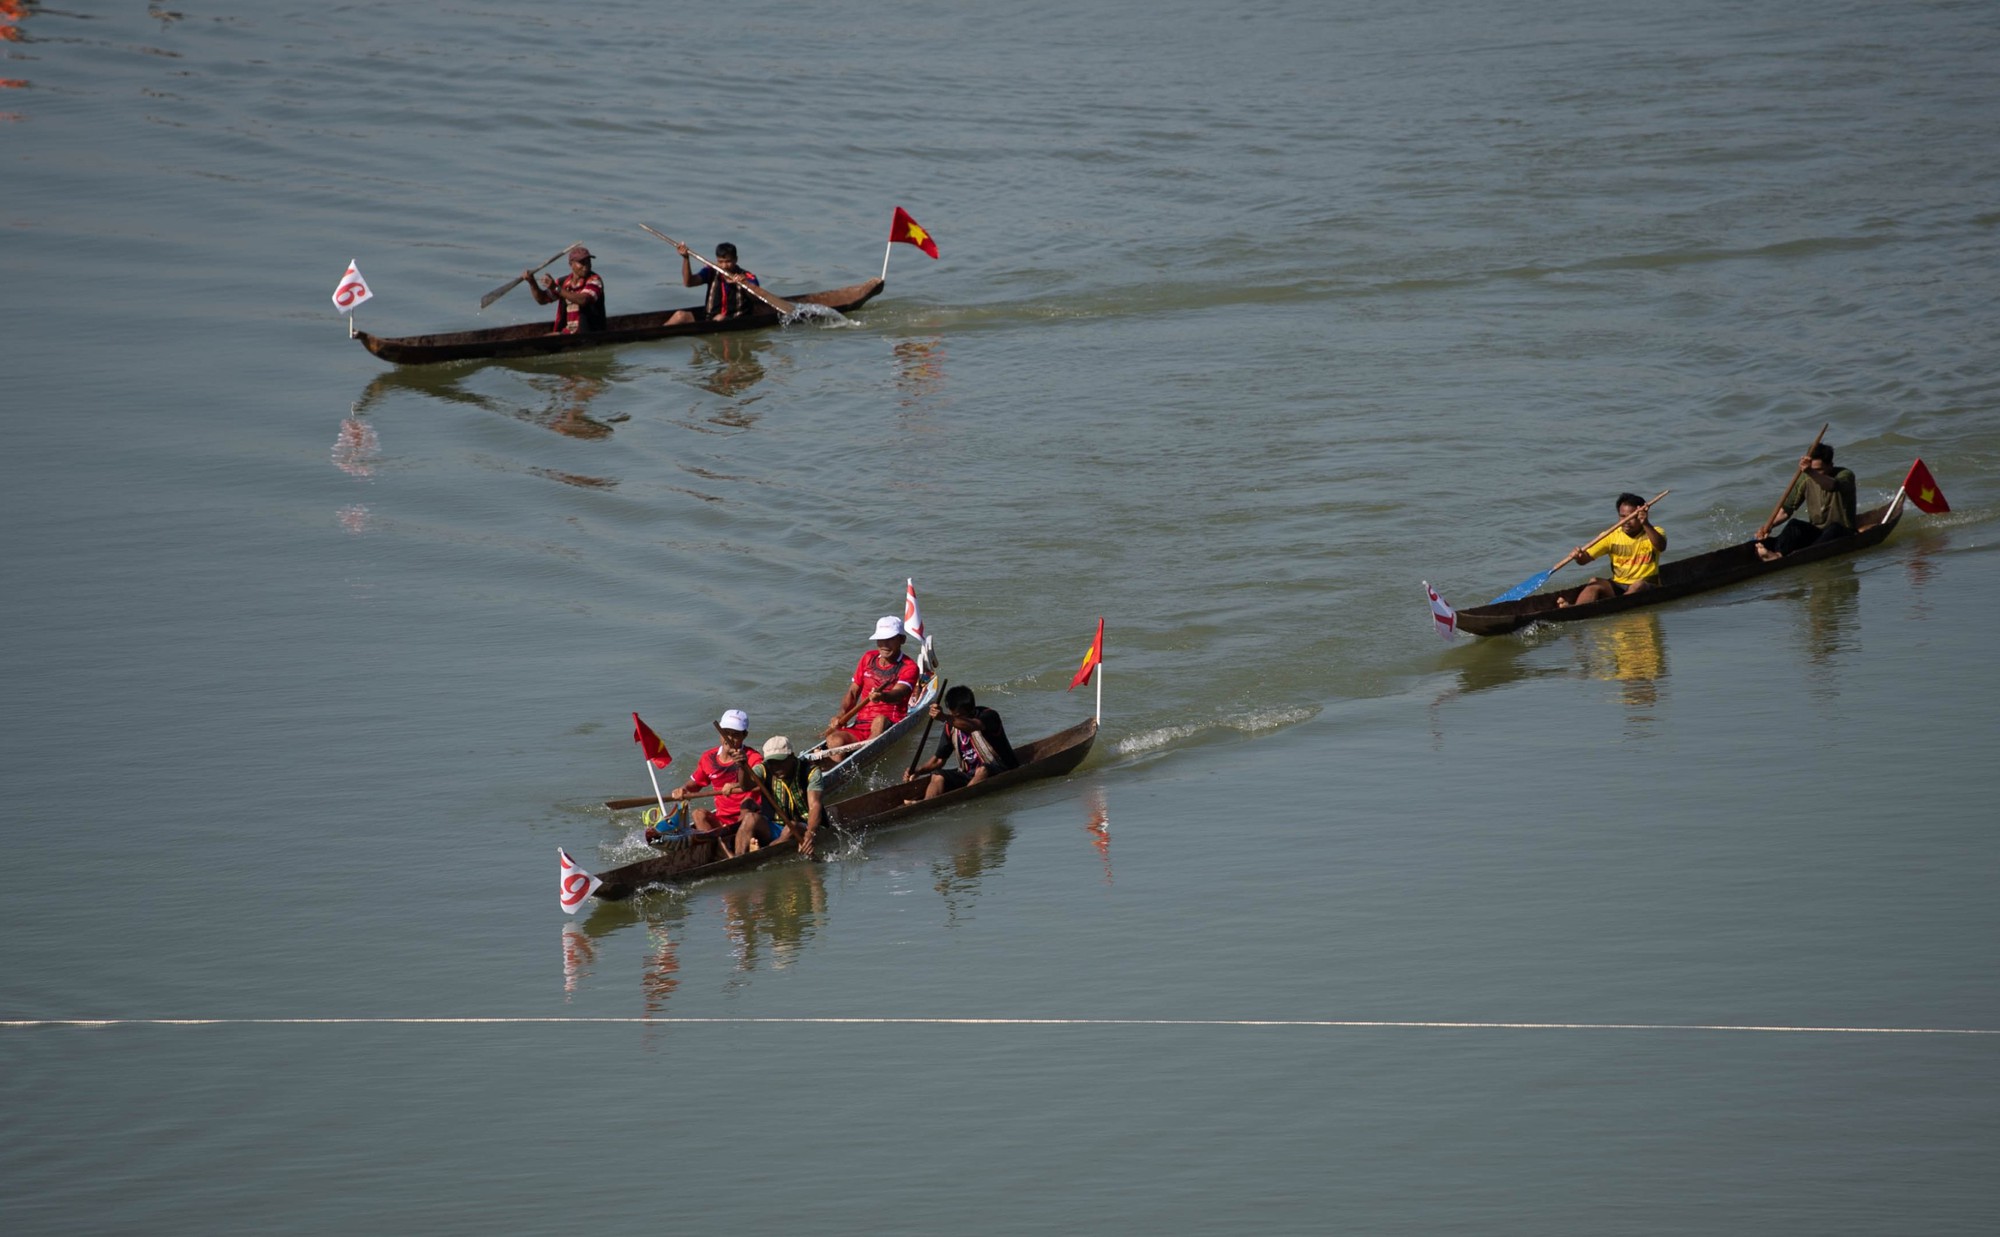 Kon Tum: A canoe race on an upstream river - Photo 3.